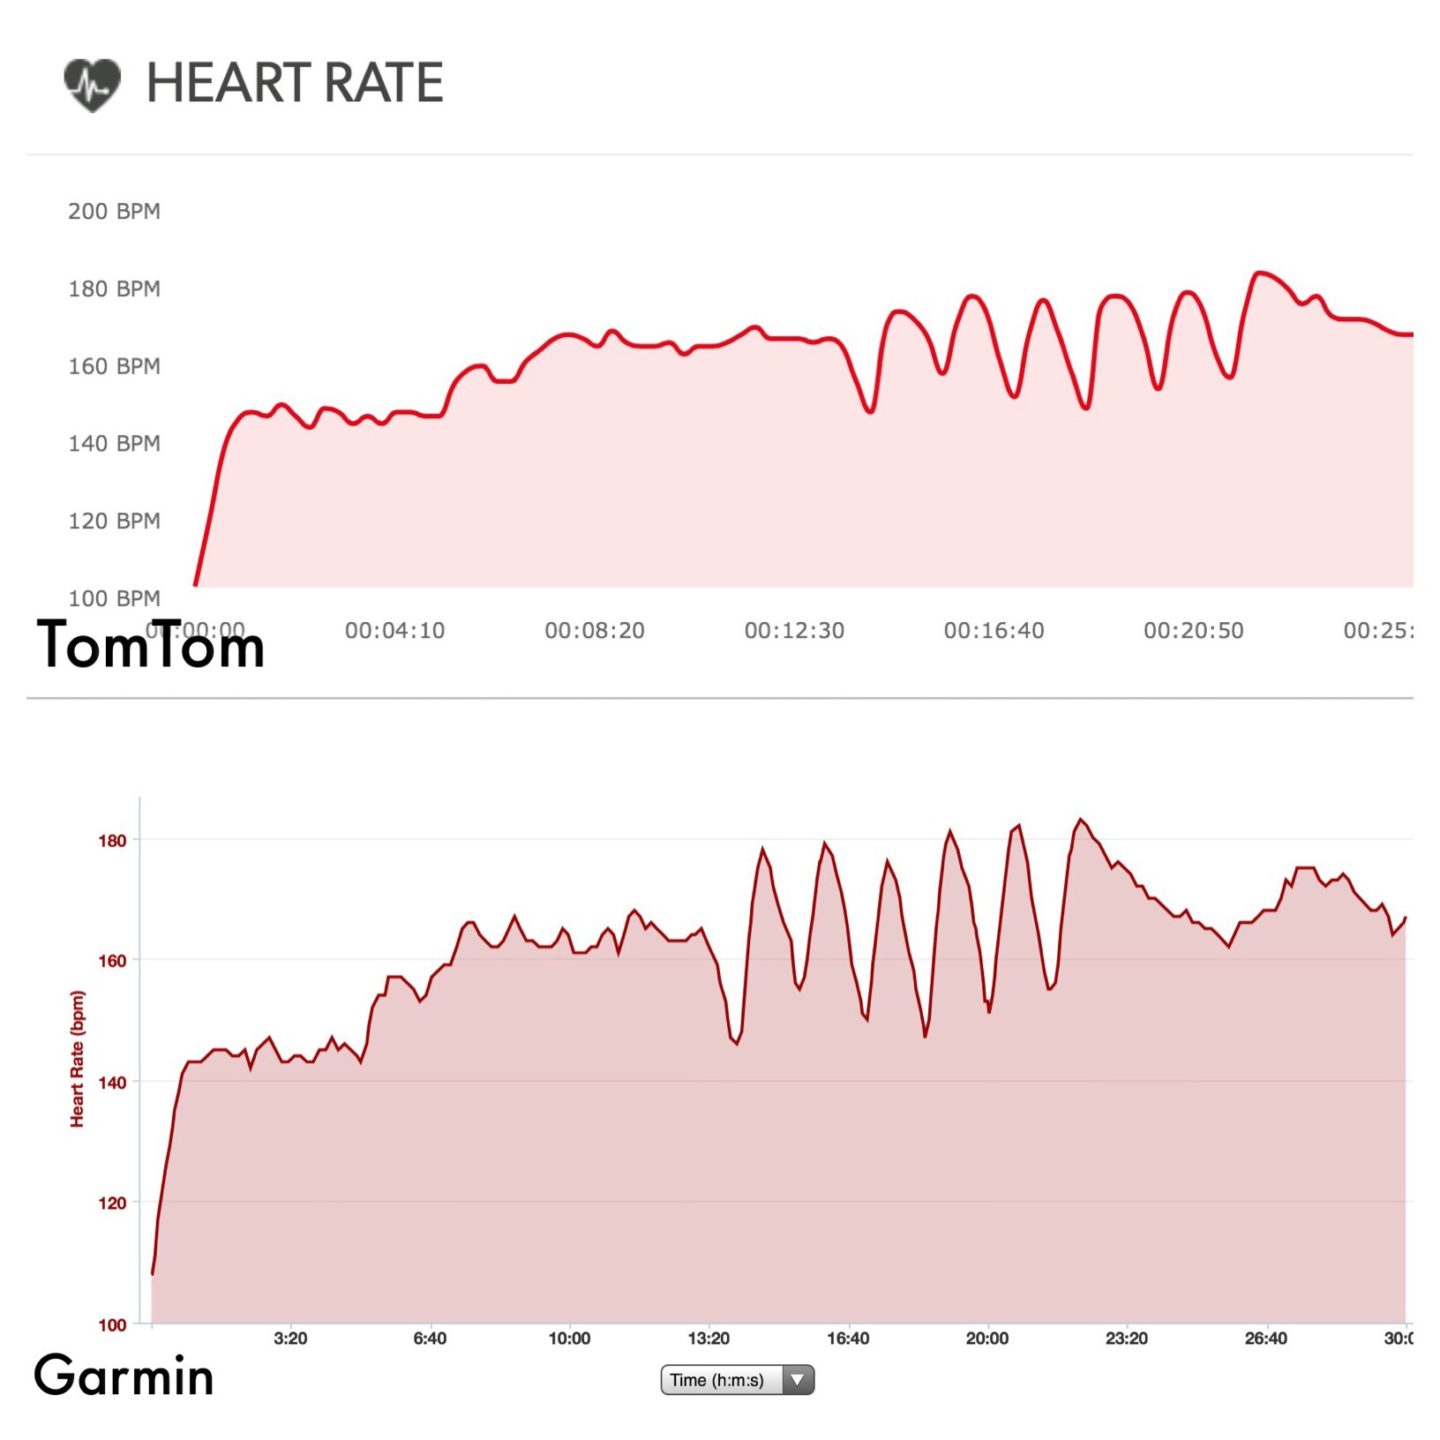 Heart Rate: TomTom vs Garmin